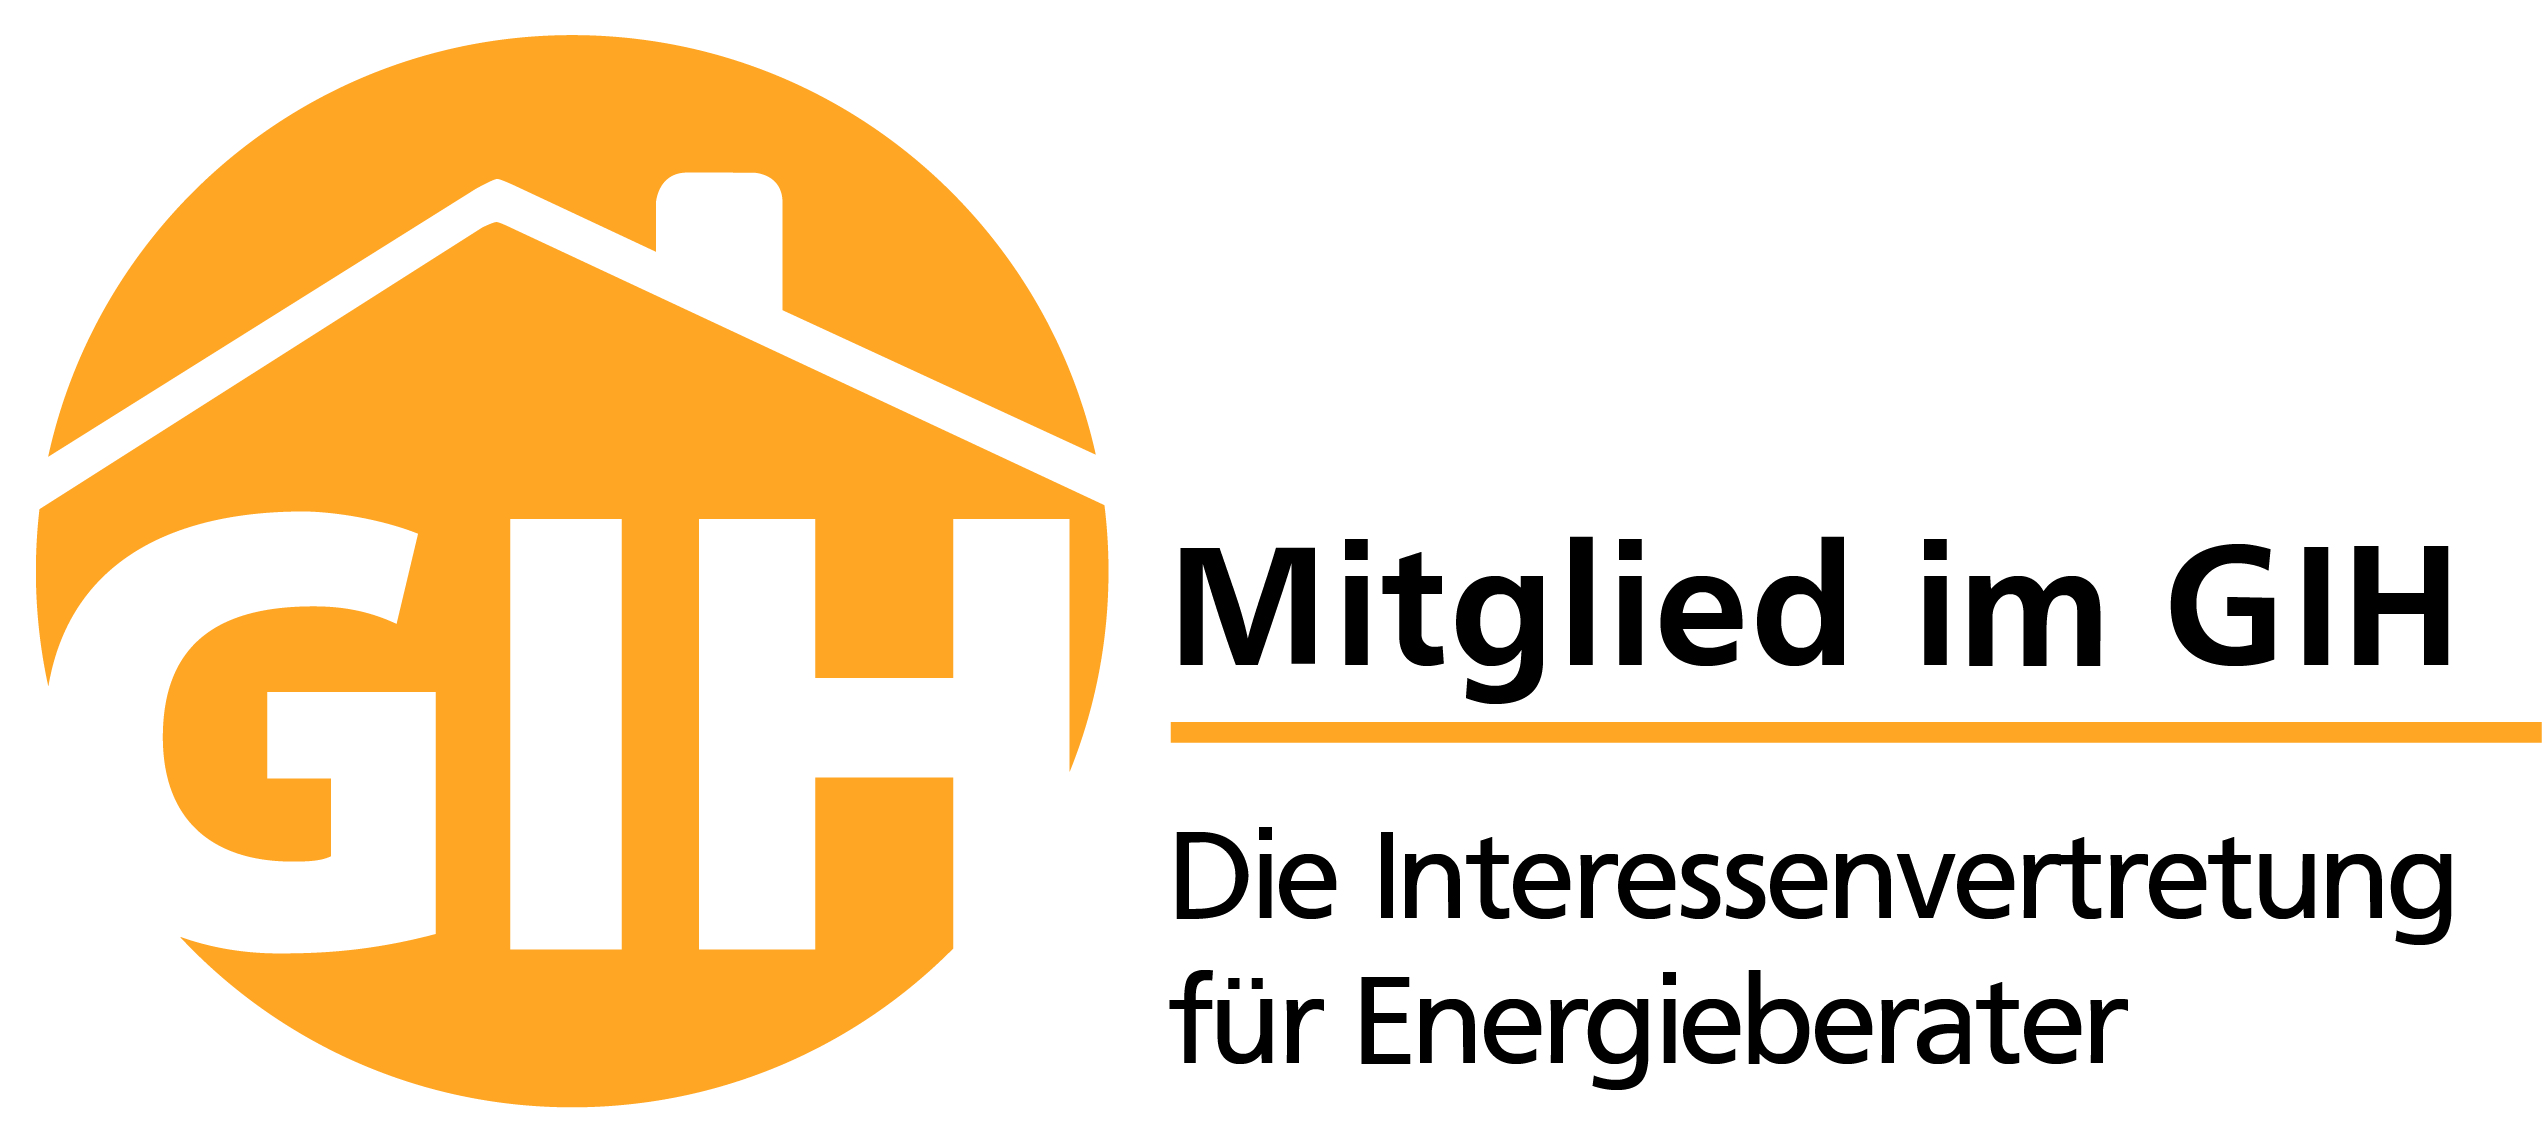 Bundesverband GIH Logo 